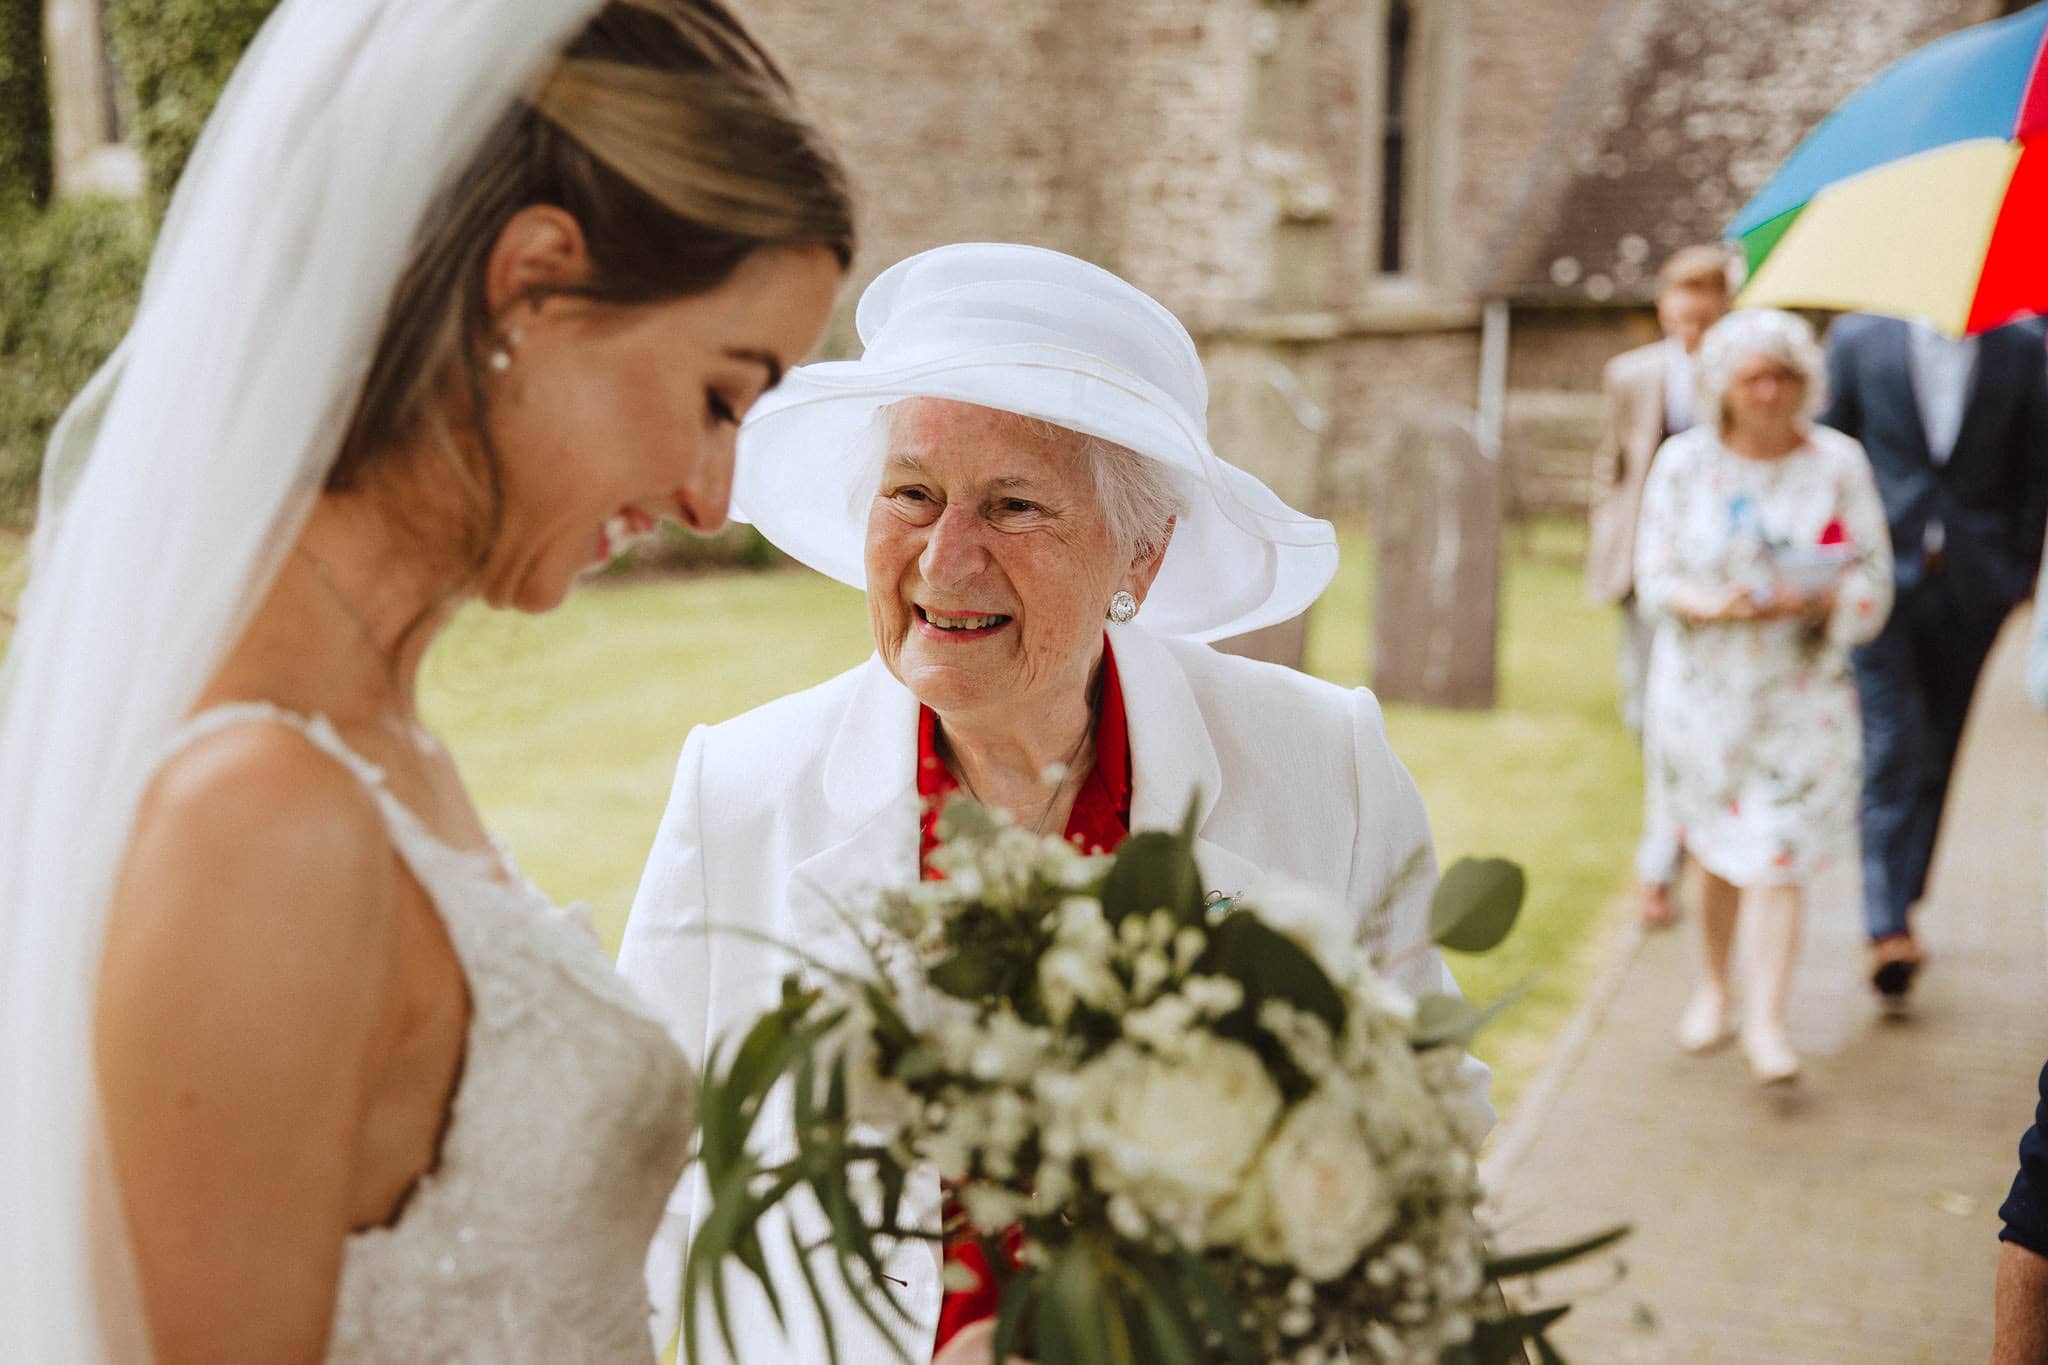 grandma congratulating the bride